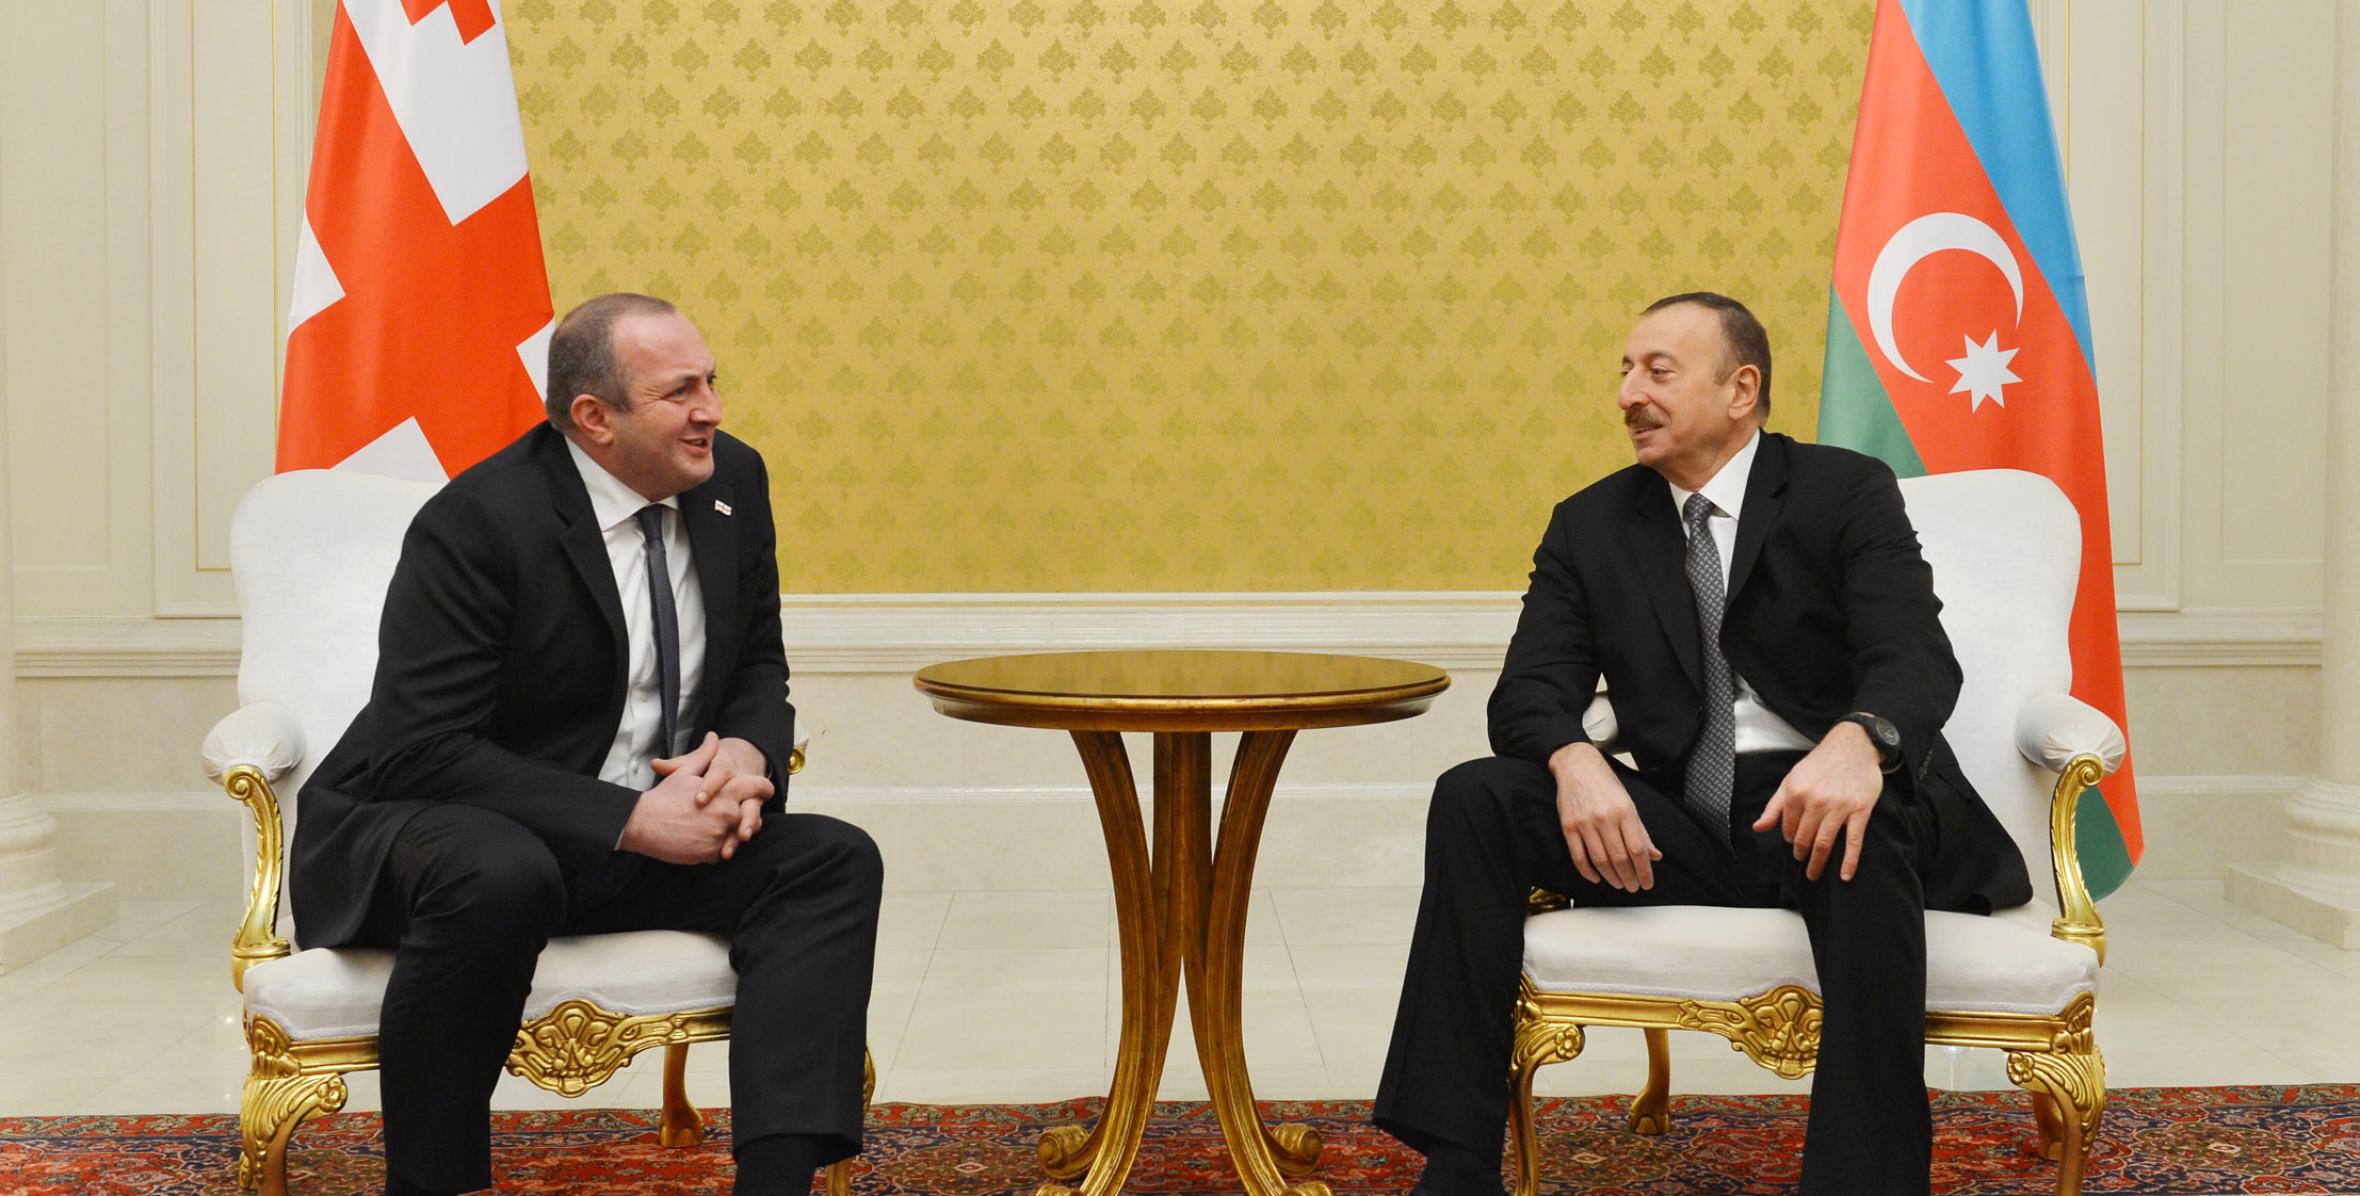 Состоялась встреча Ильхама Алиева и Президента Грузии Георгия Маргвелашвили один на один